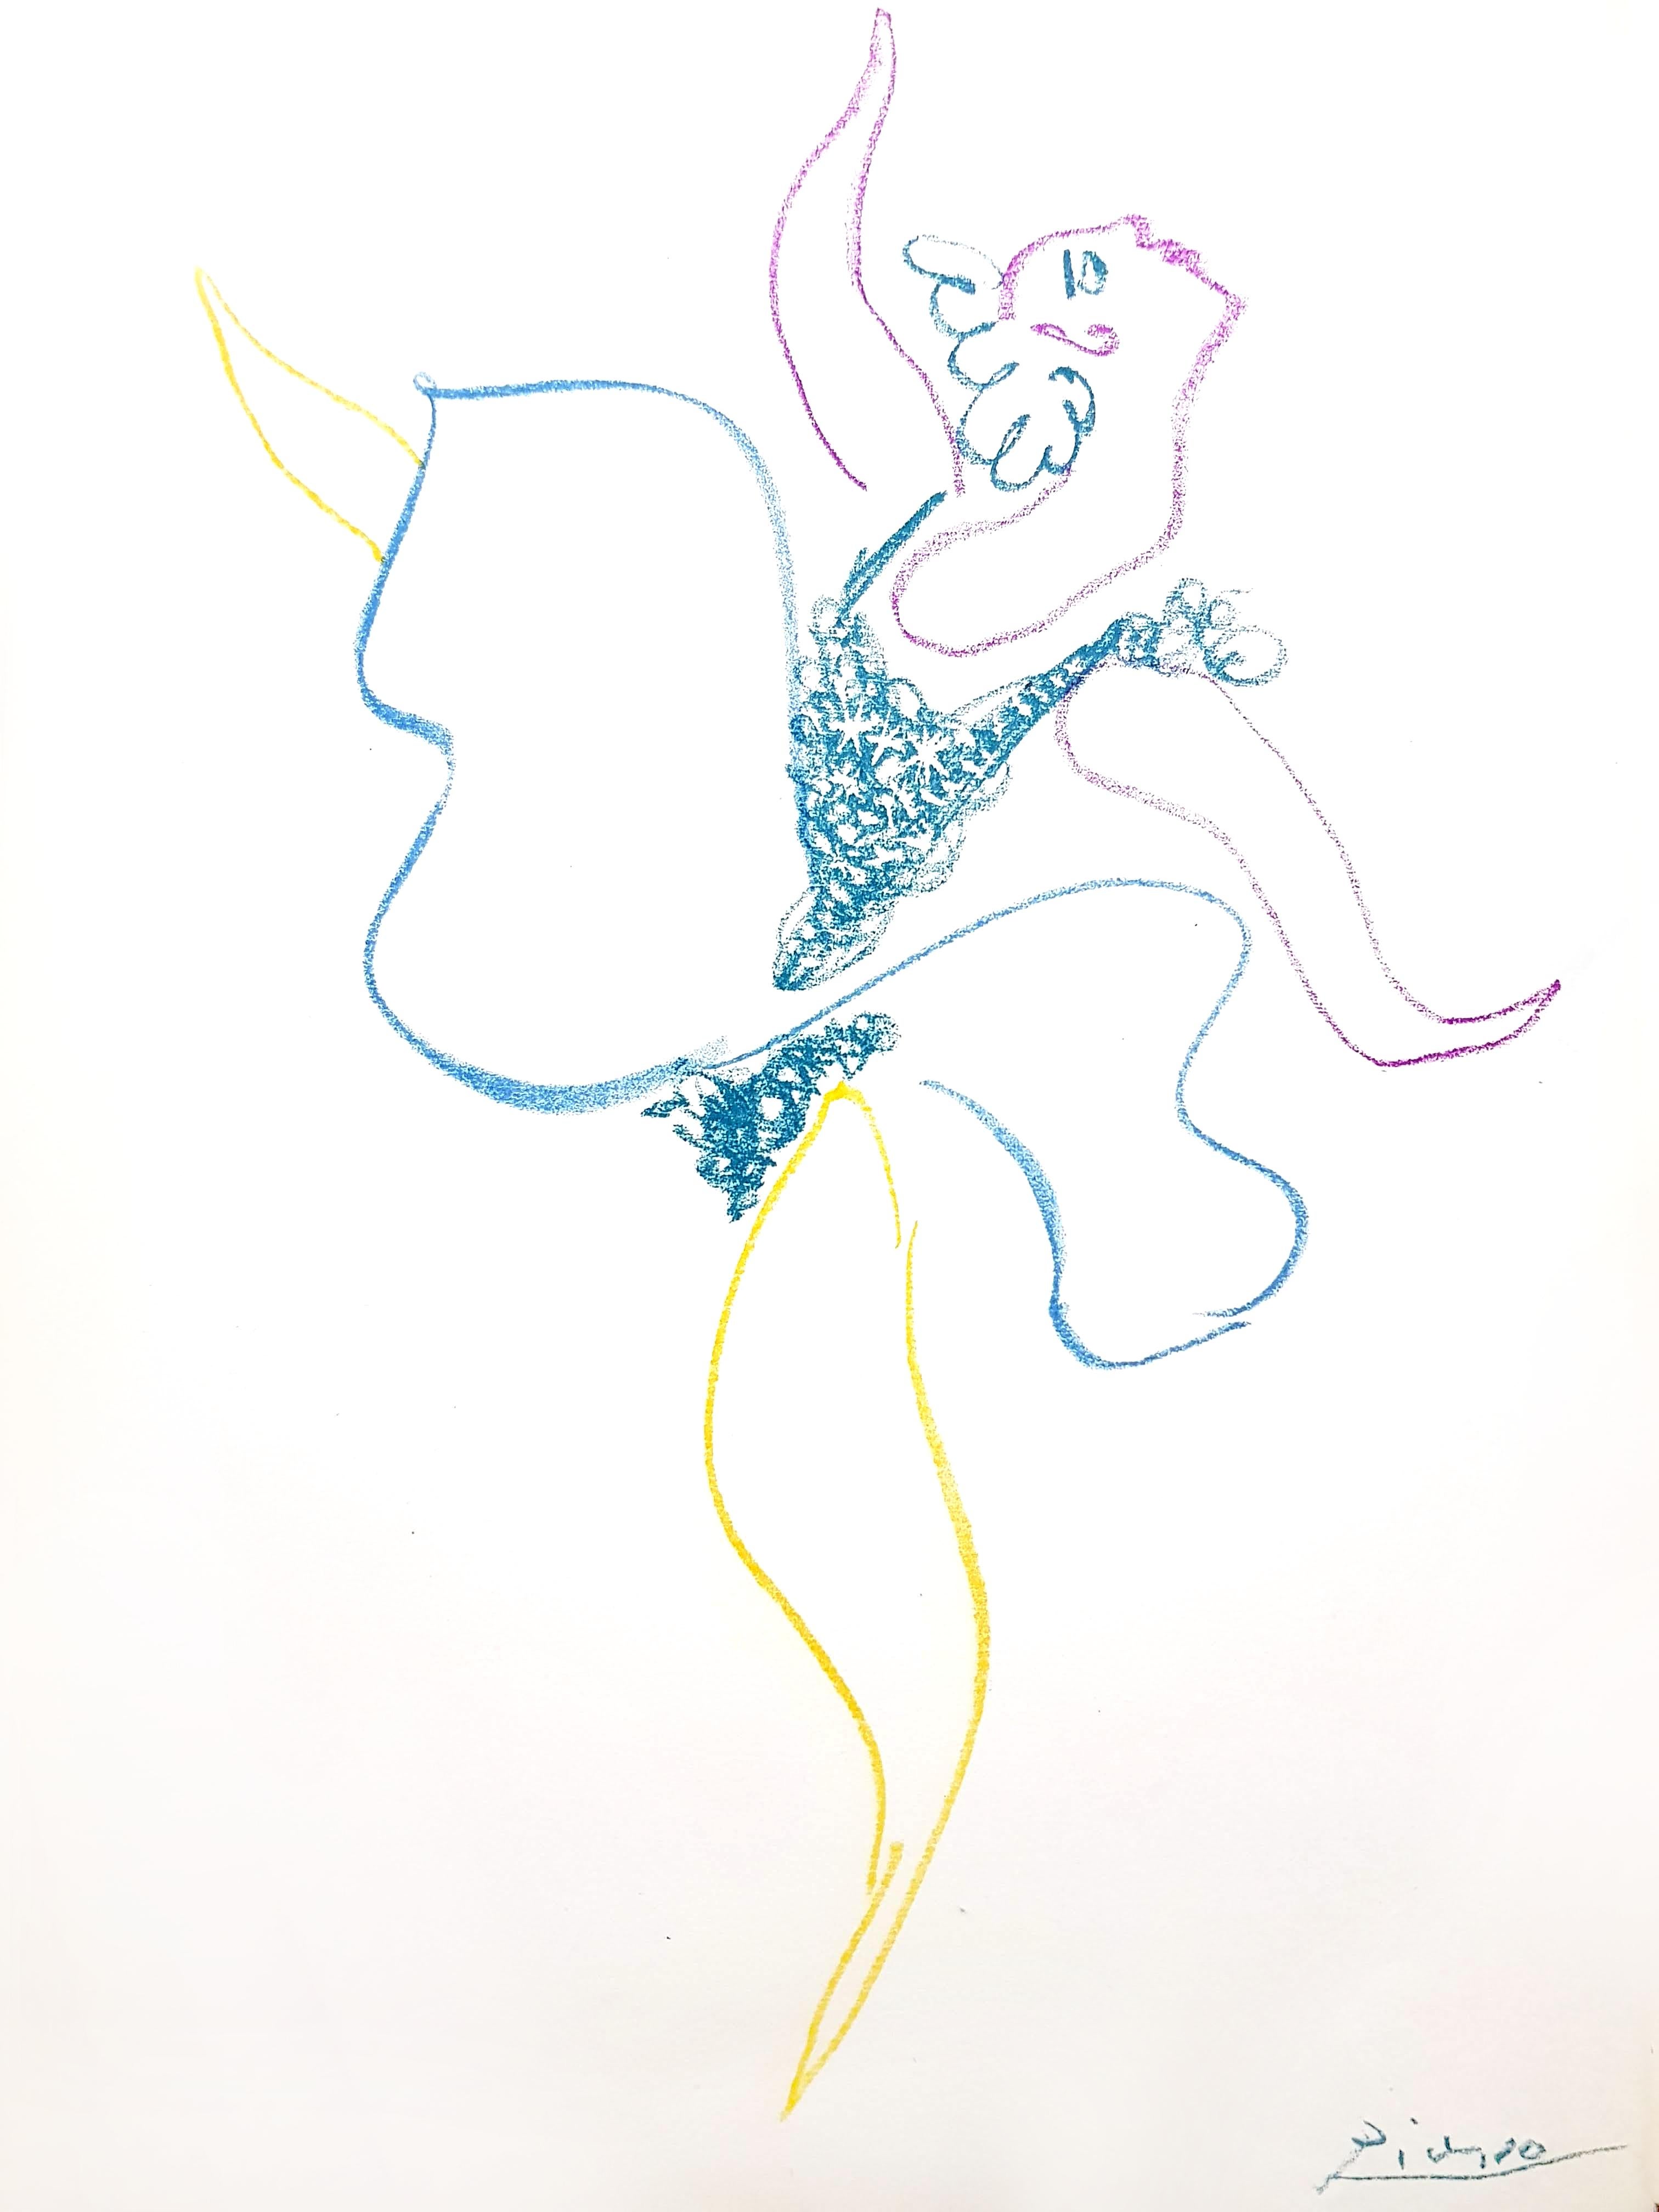 Pablo Picasso - Lithographie originale
Titre : La danseuse de ballet 
Dimensions : 32 x 24 cm
1954
Référence : Bloch 767
Frontispice du livre "Le Ballet" (Paris : Editions Hachet, 1954) par Boris Kochno
Edition de 1000 exemplaires
Signature imprimée